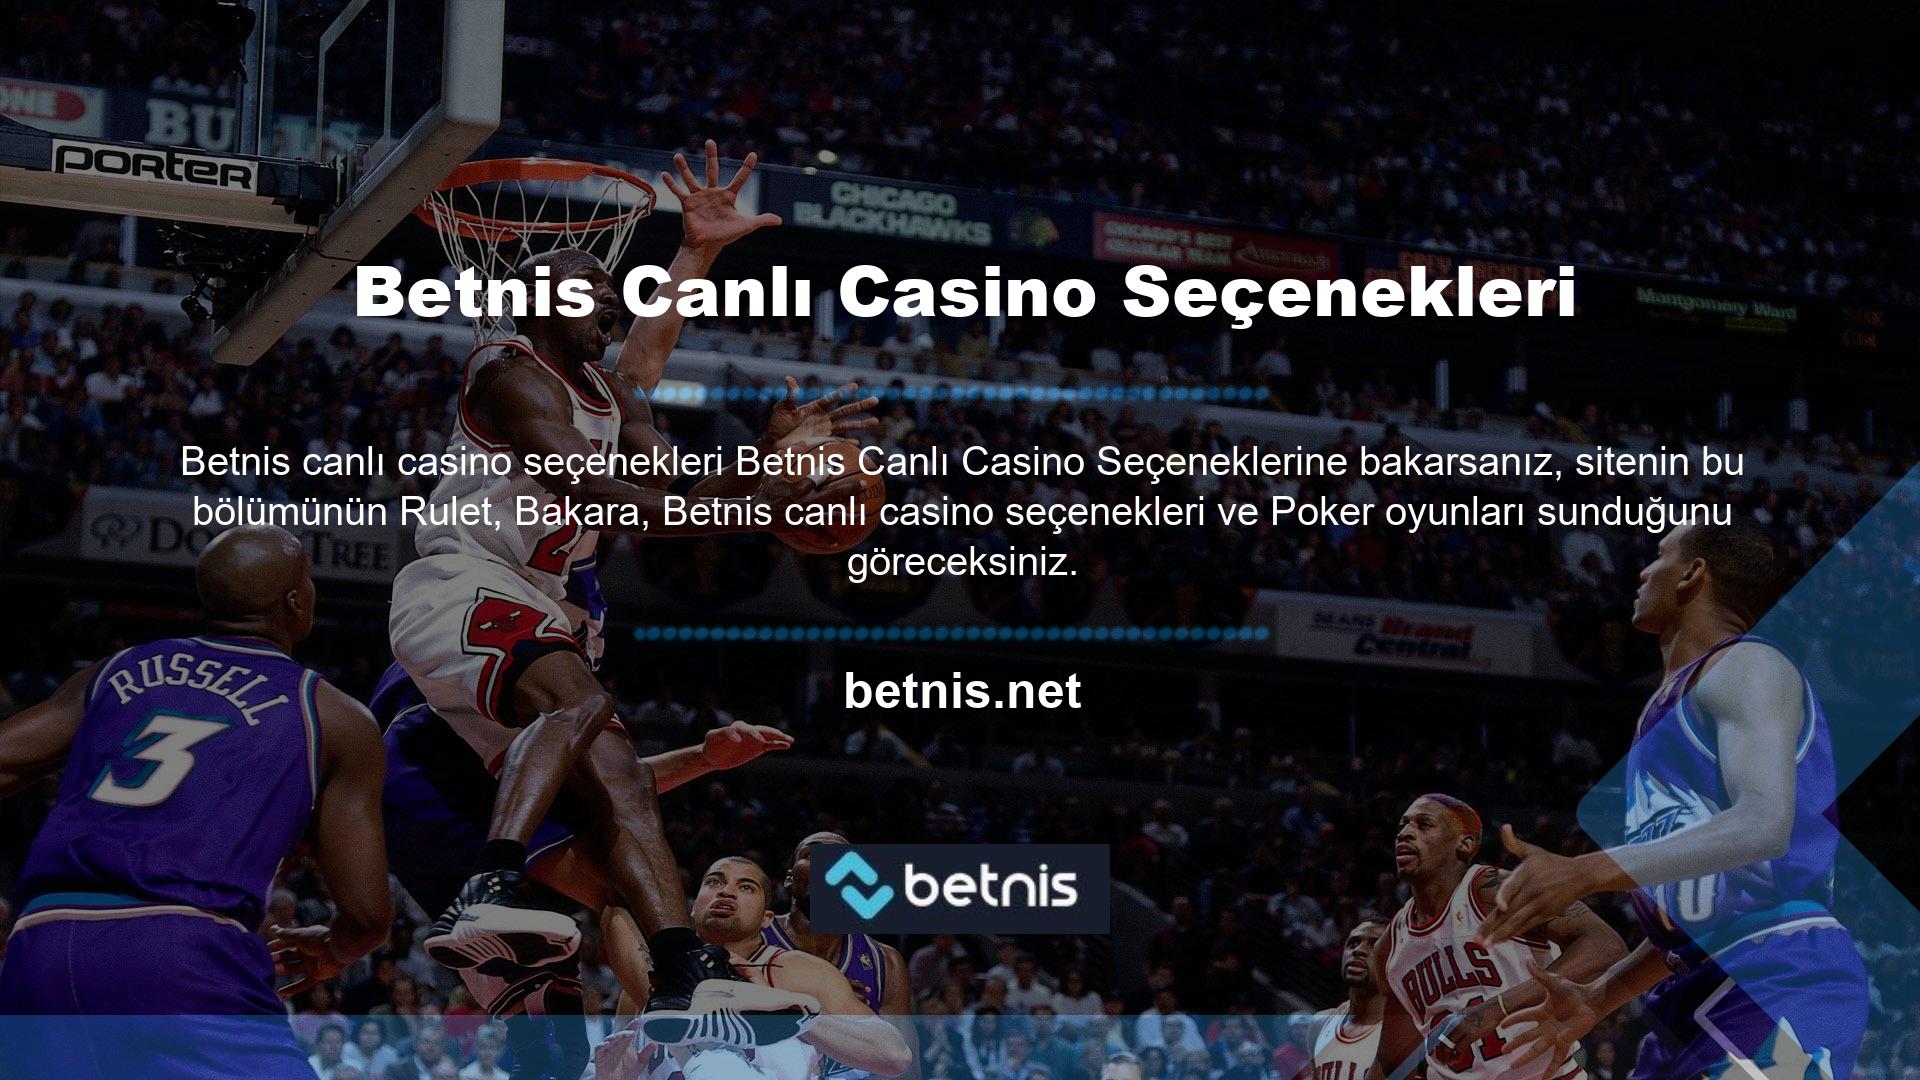 Betnis canlı casino seçenekleri Her oyun seçeneği farklı bir odanın kilidini açar